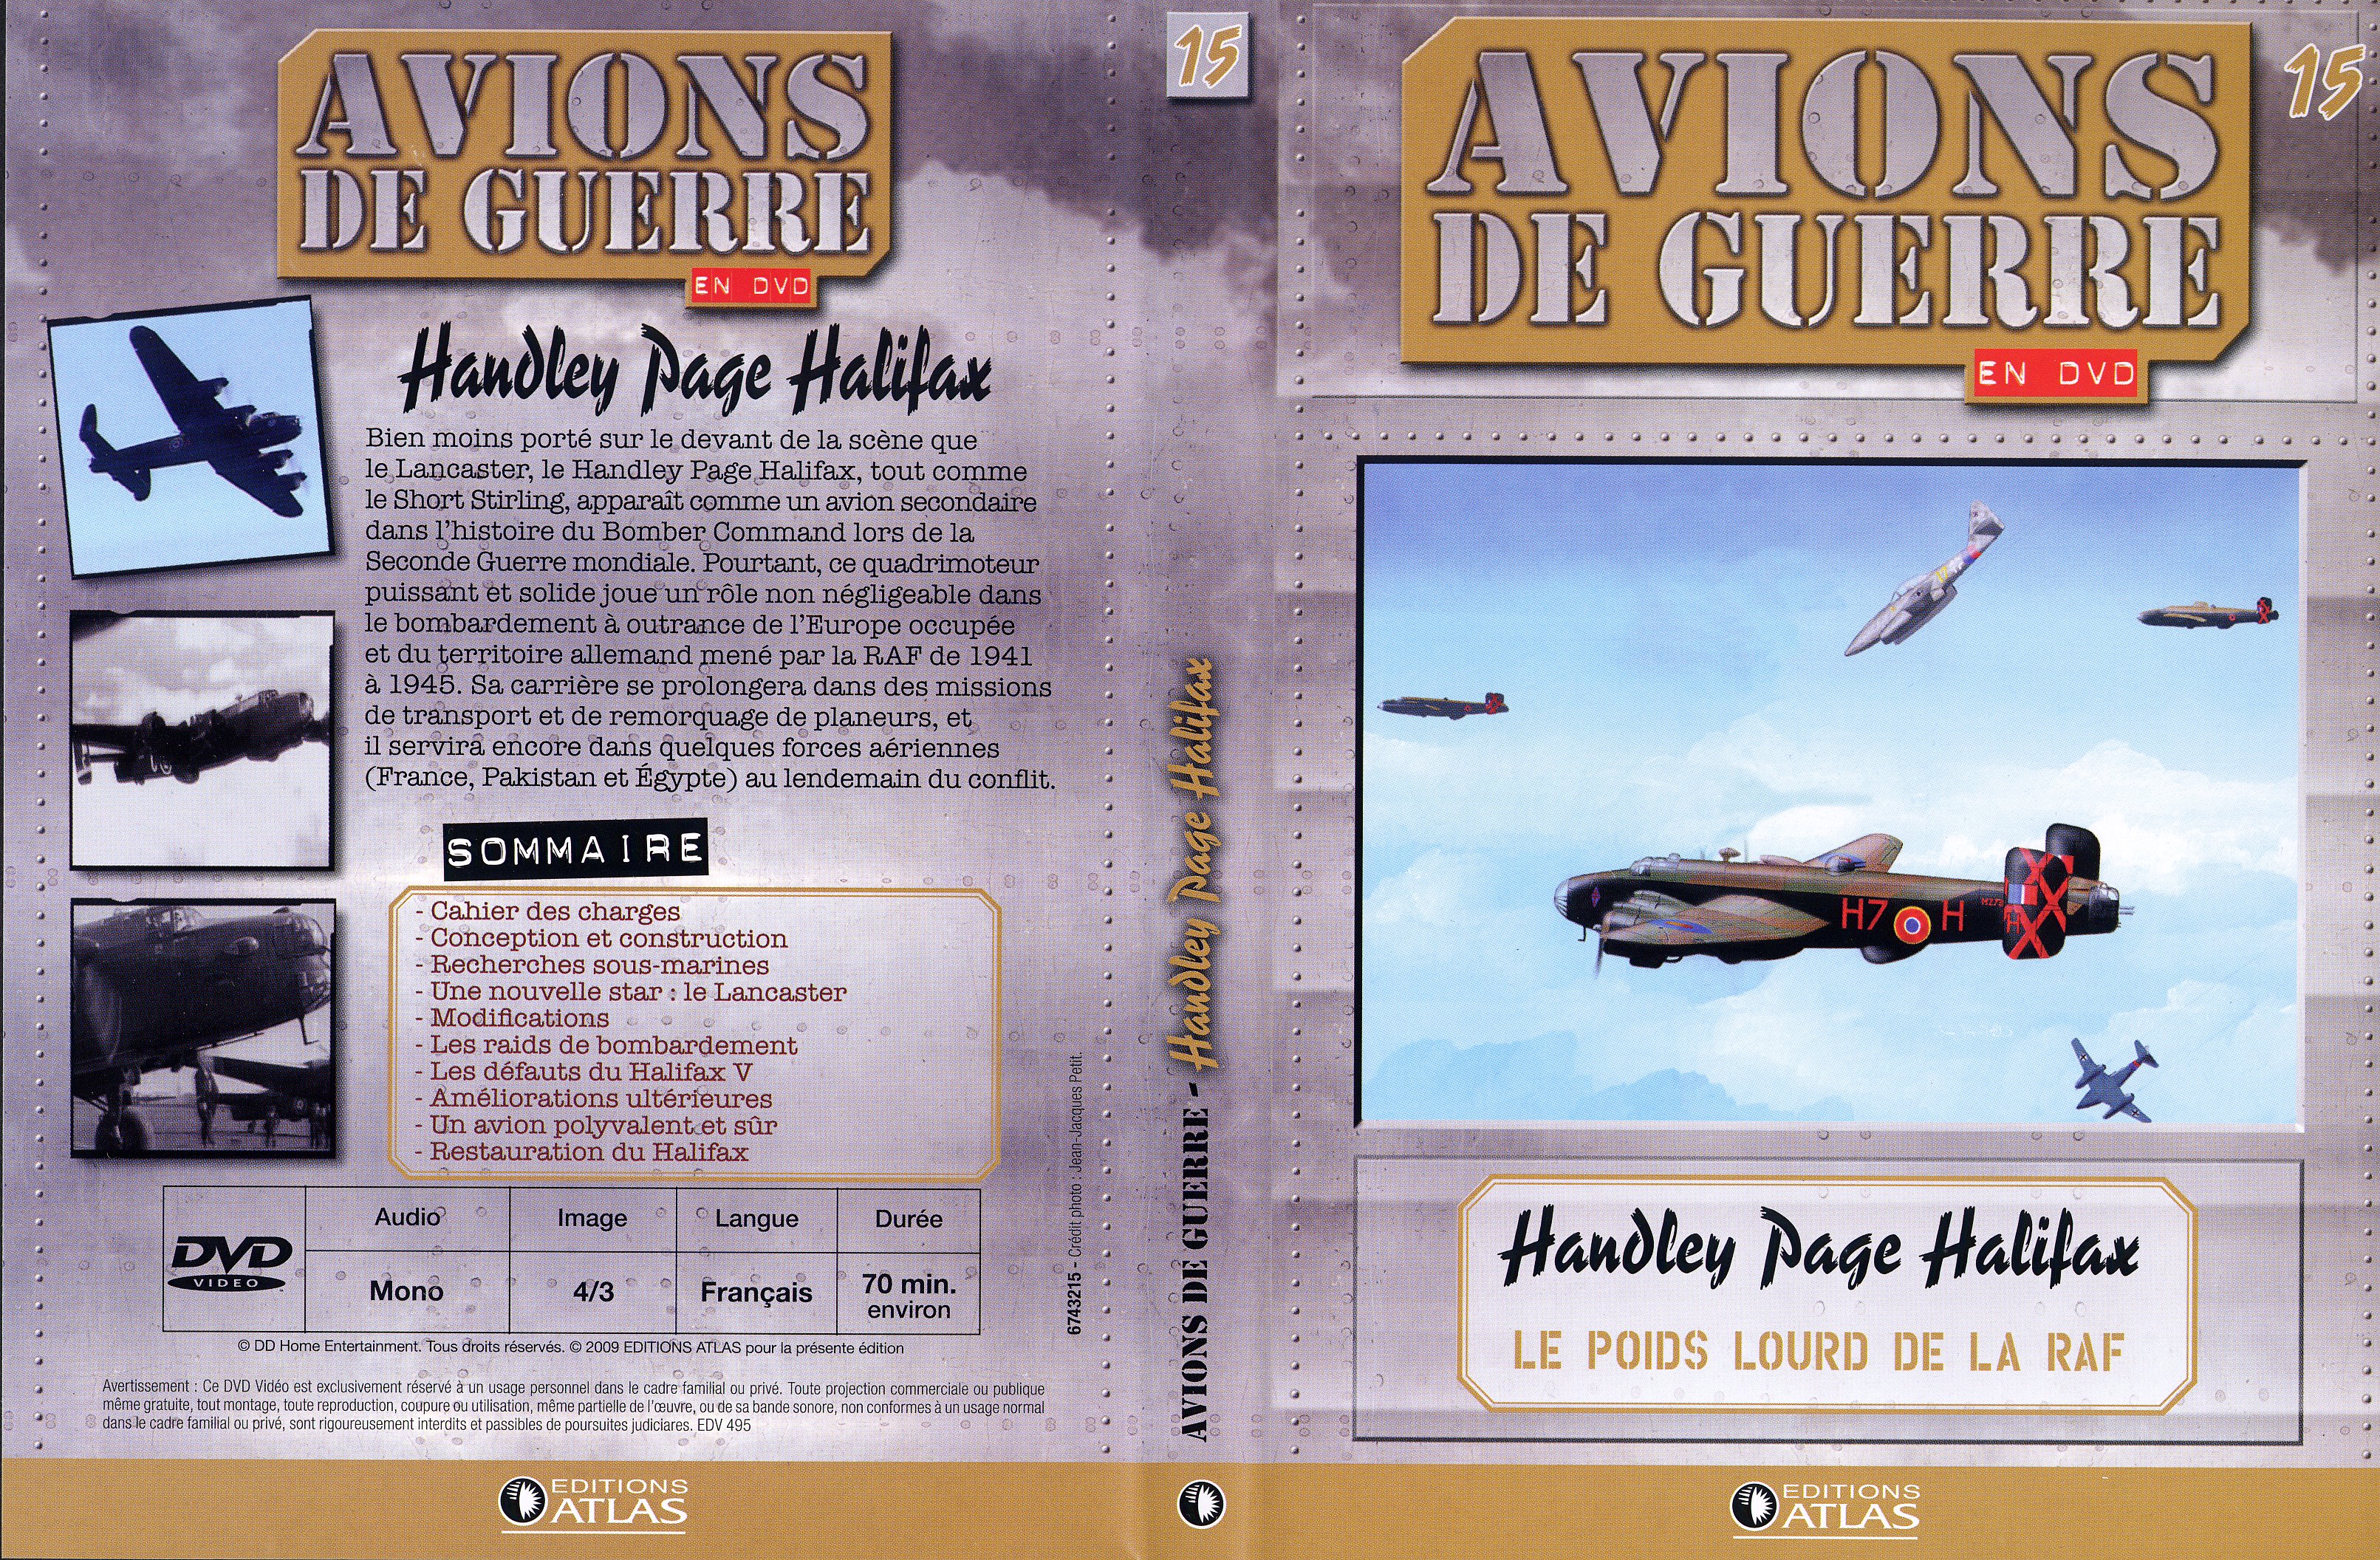 Jaquette DVD Avions de guerre en DVD vol 15